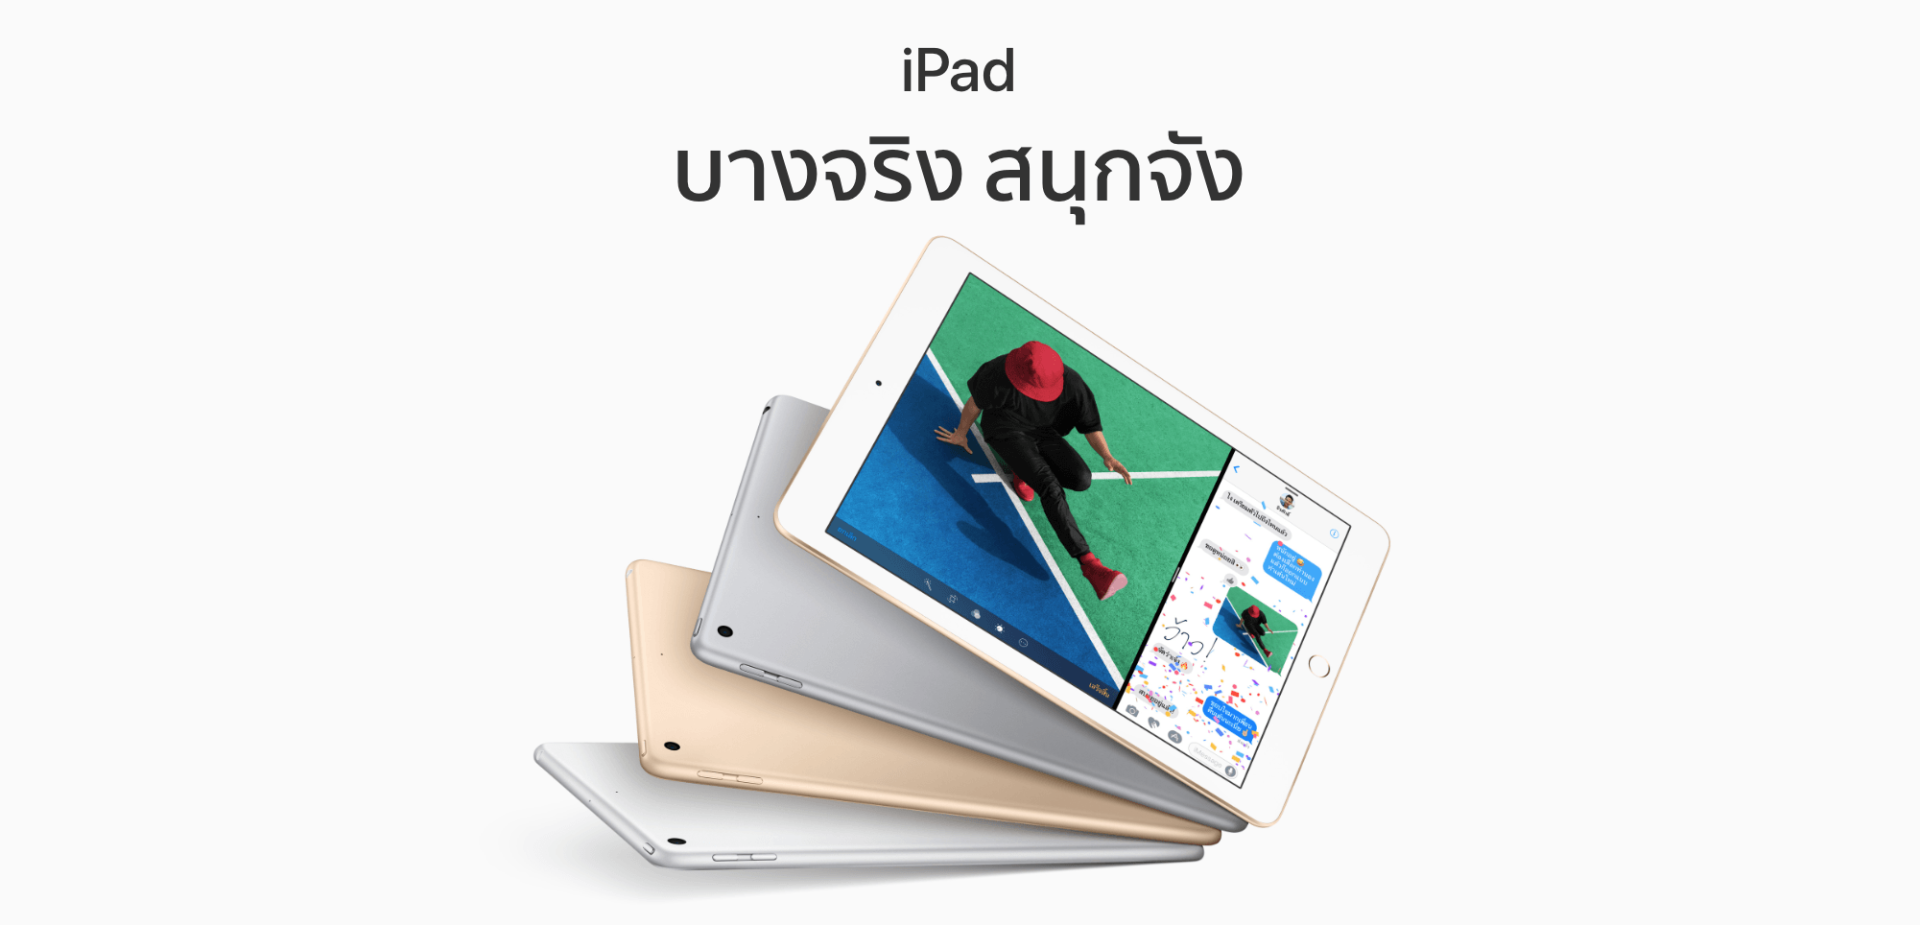 Apple เปิดตัว iPad รุ่นใหม่แทนที่ iPad Air 2 สเปกดีขึ้น ราคาถูกลงด้วย!